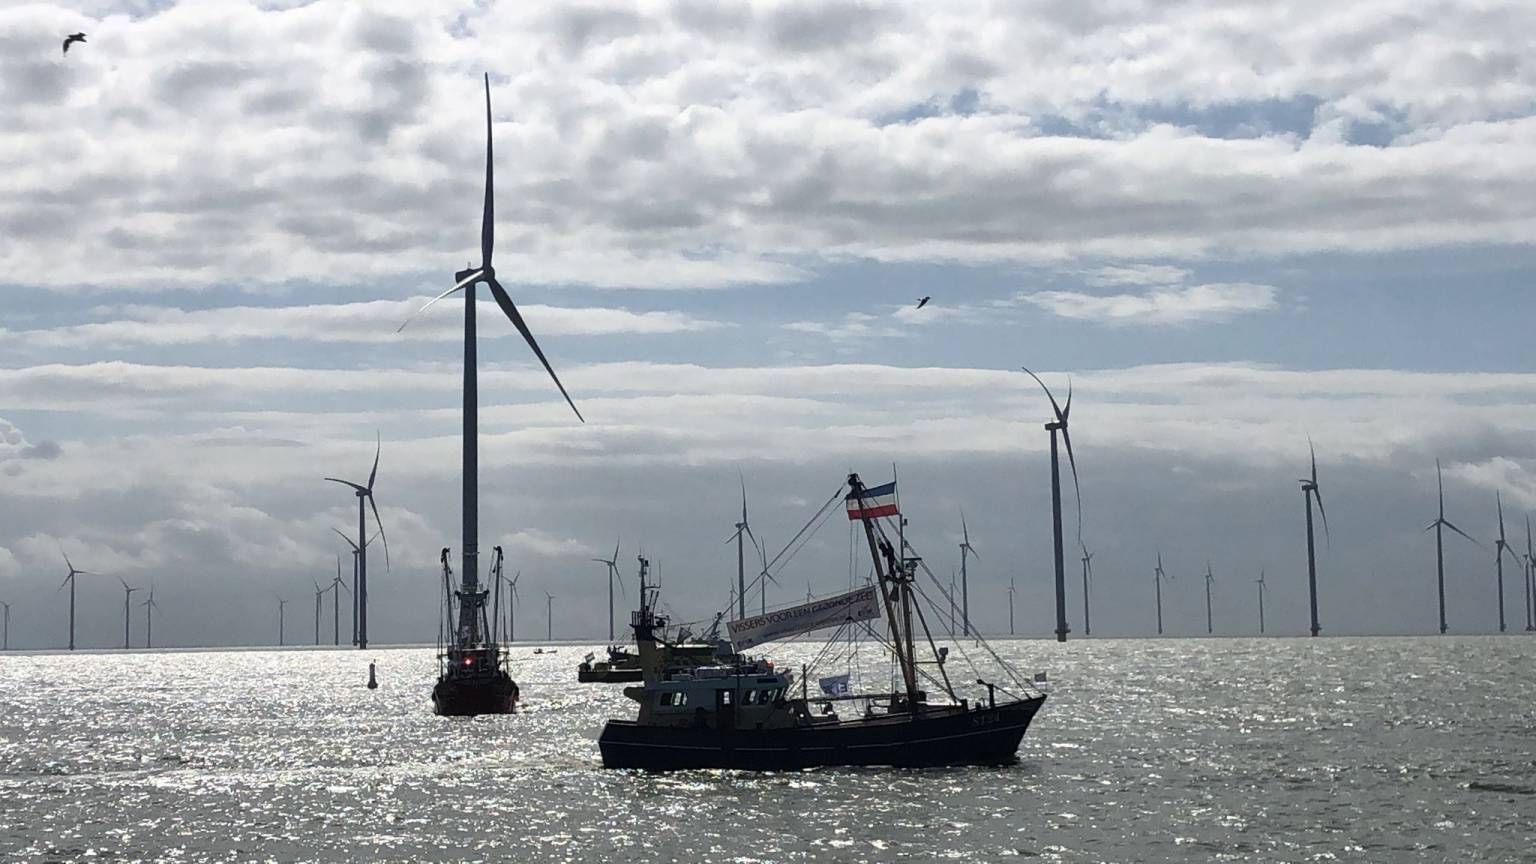 नीदरलैंडः मछुआरों को फ्रिस्लान विंड फार्म परियोजना को लेकर चिंता